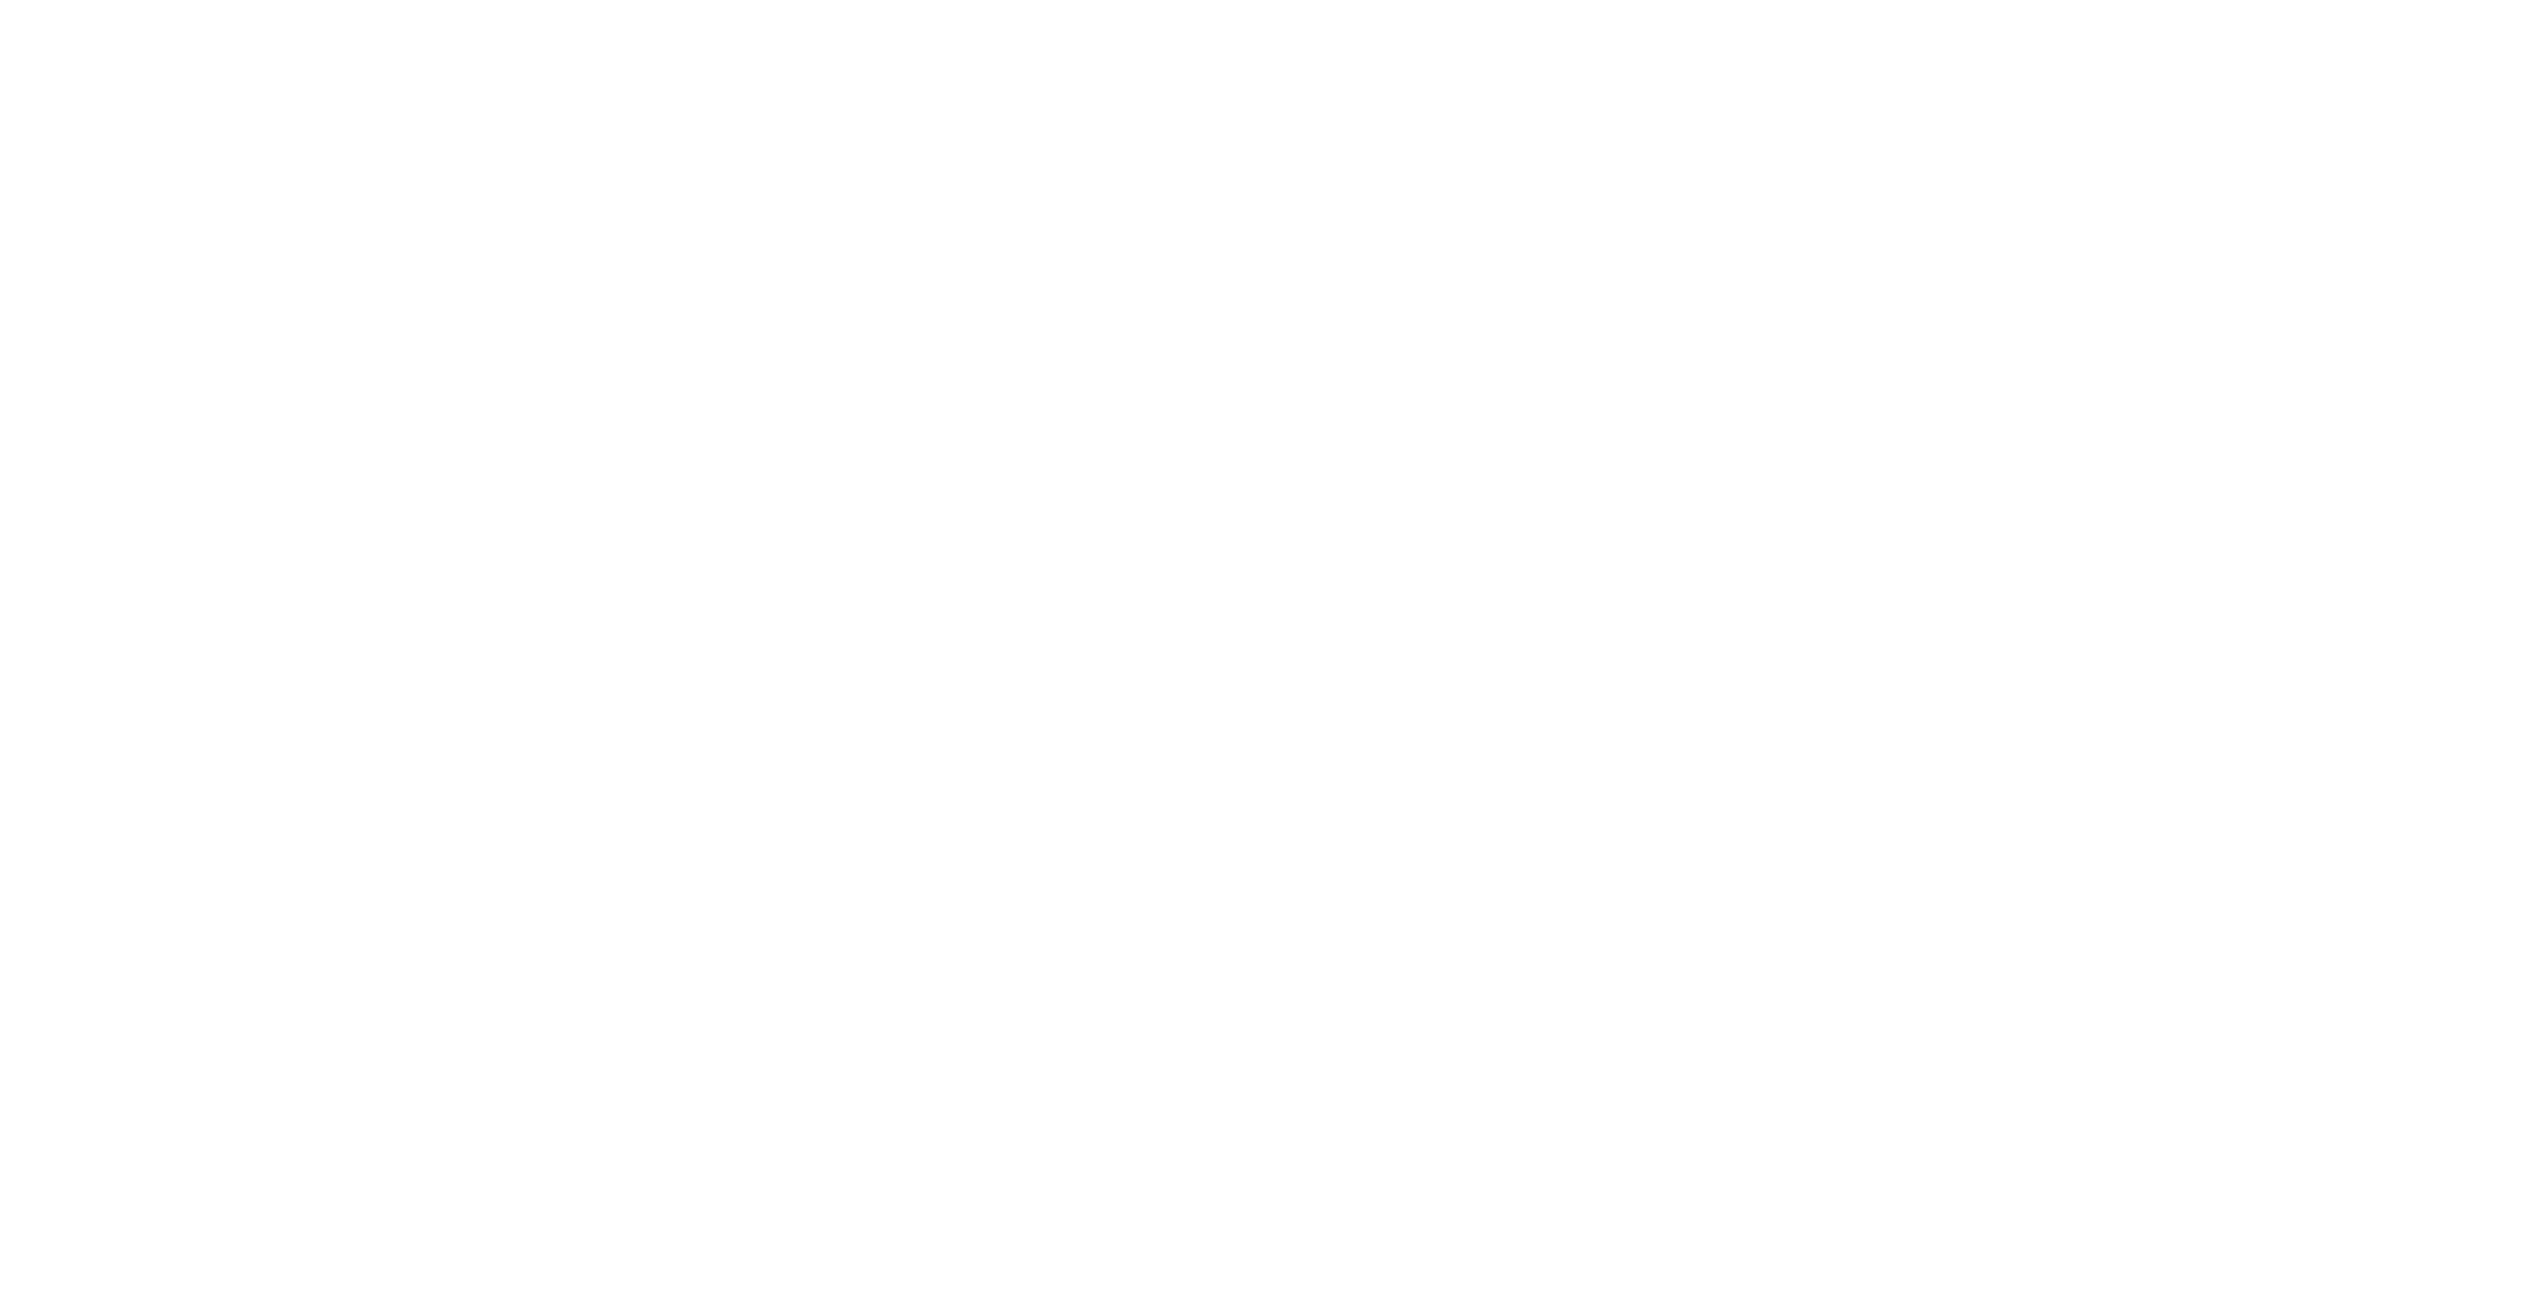 Cafe Latina